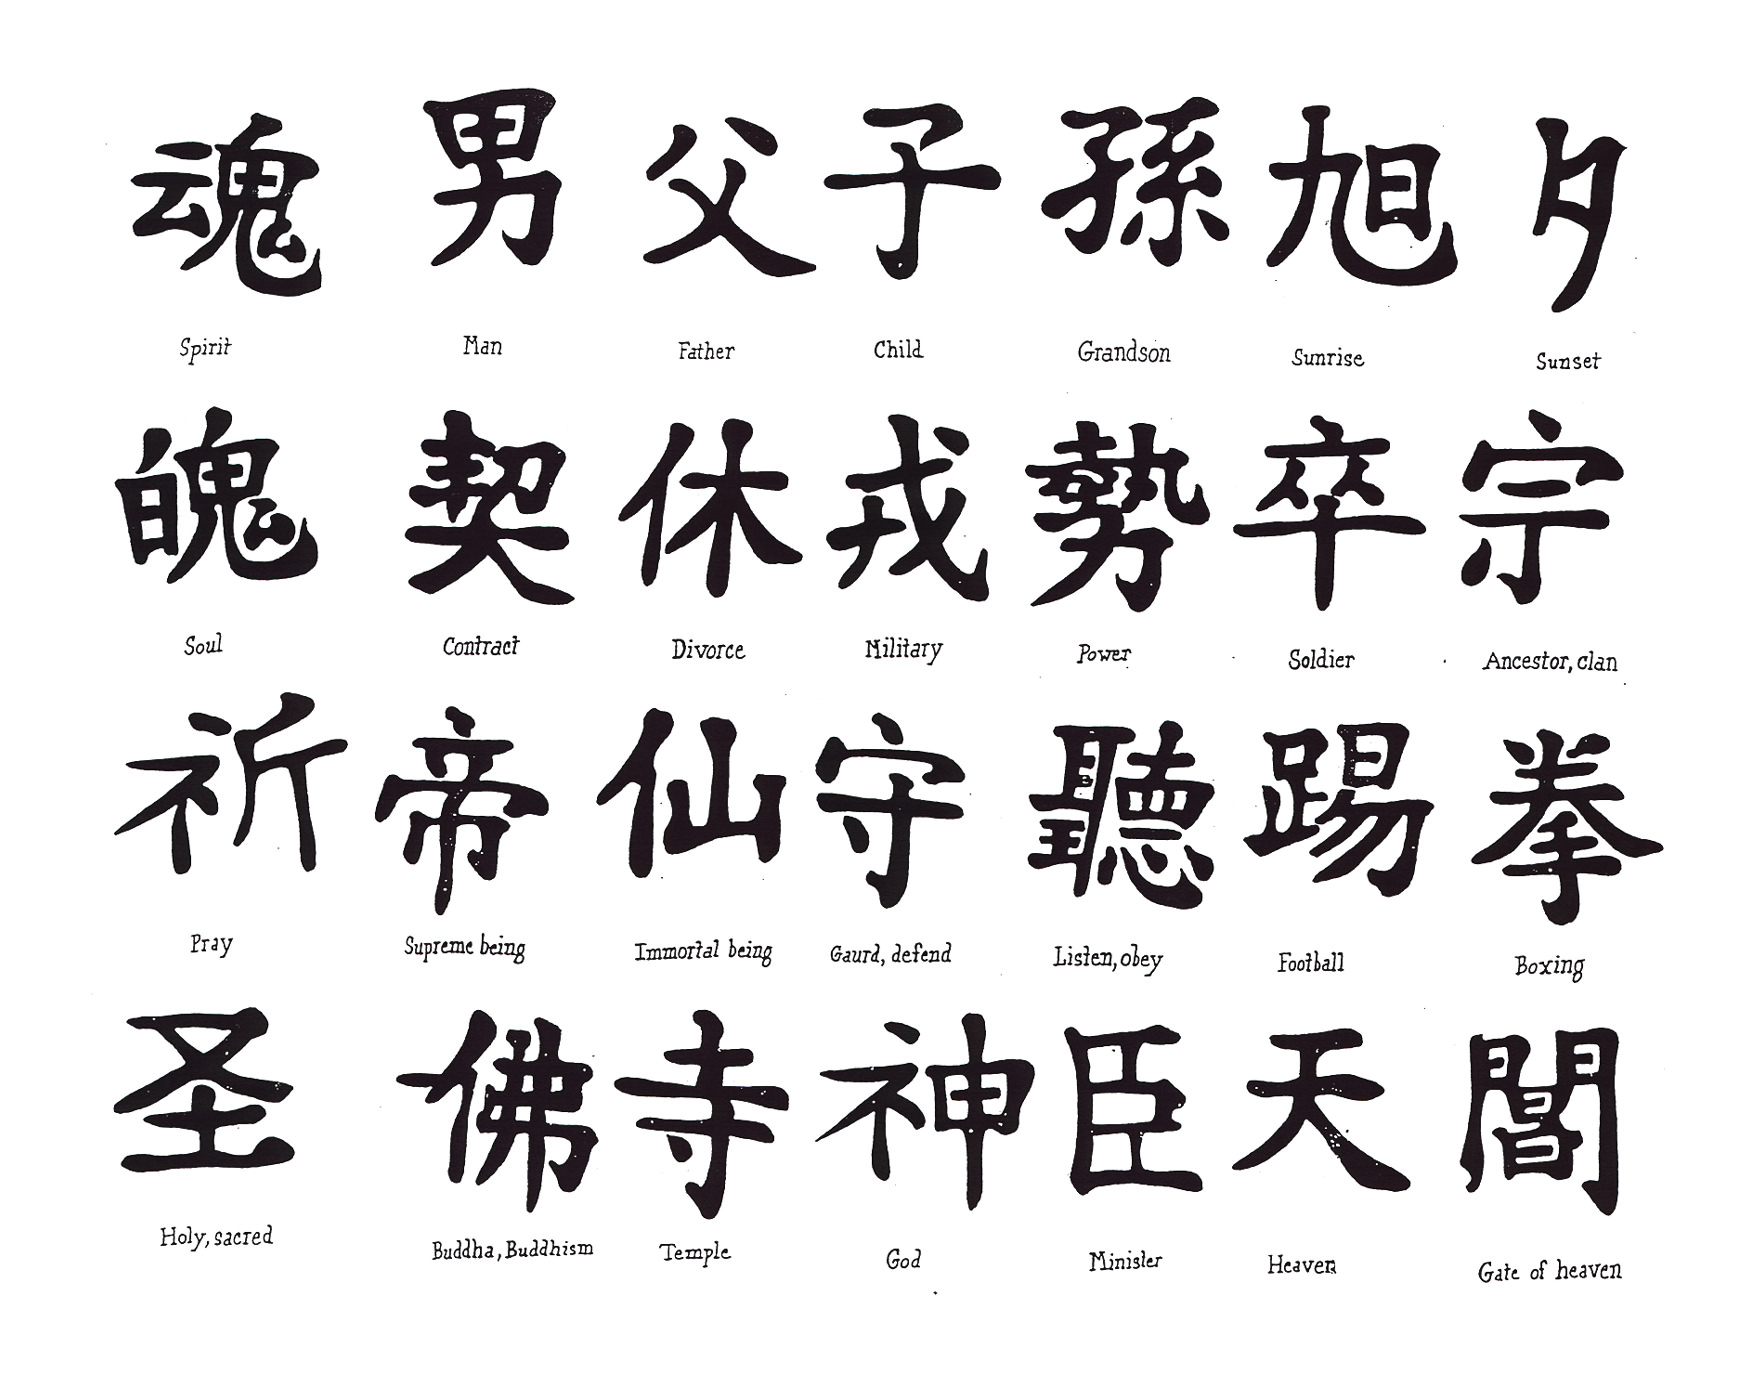 28 Beautiful Chinese Japanese Kanji Tattoo Symbols & Designs